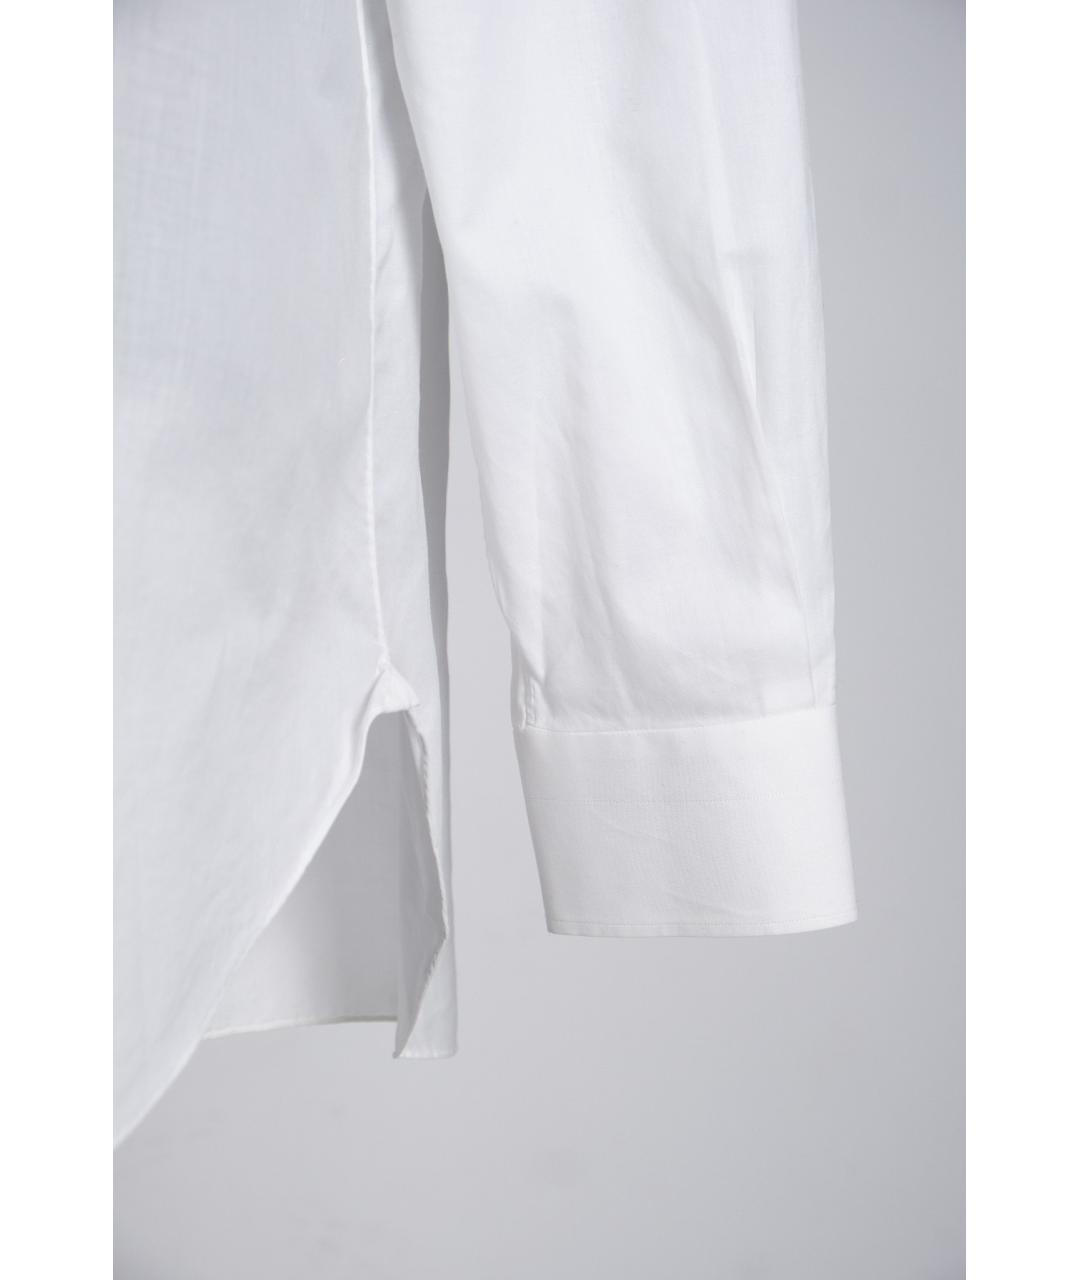 KITON Белая хлопковая классическая рубашка, фото 4